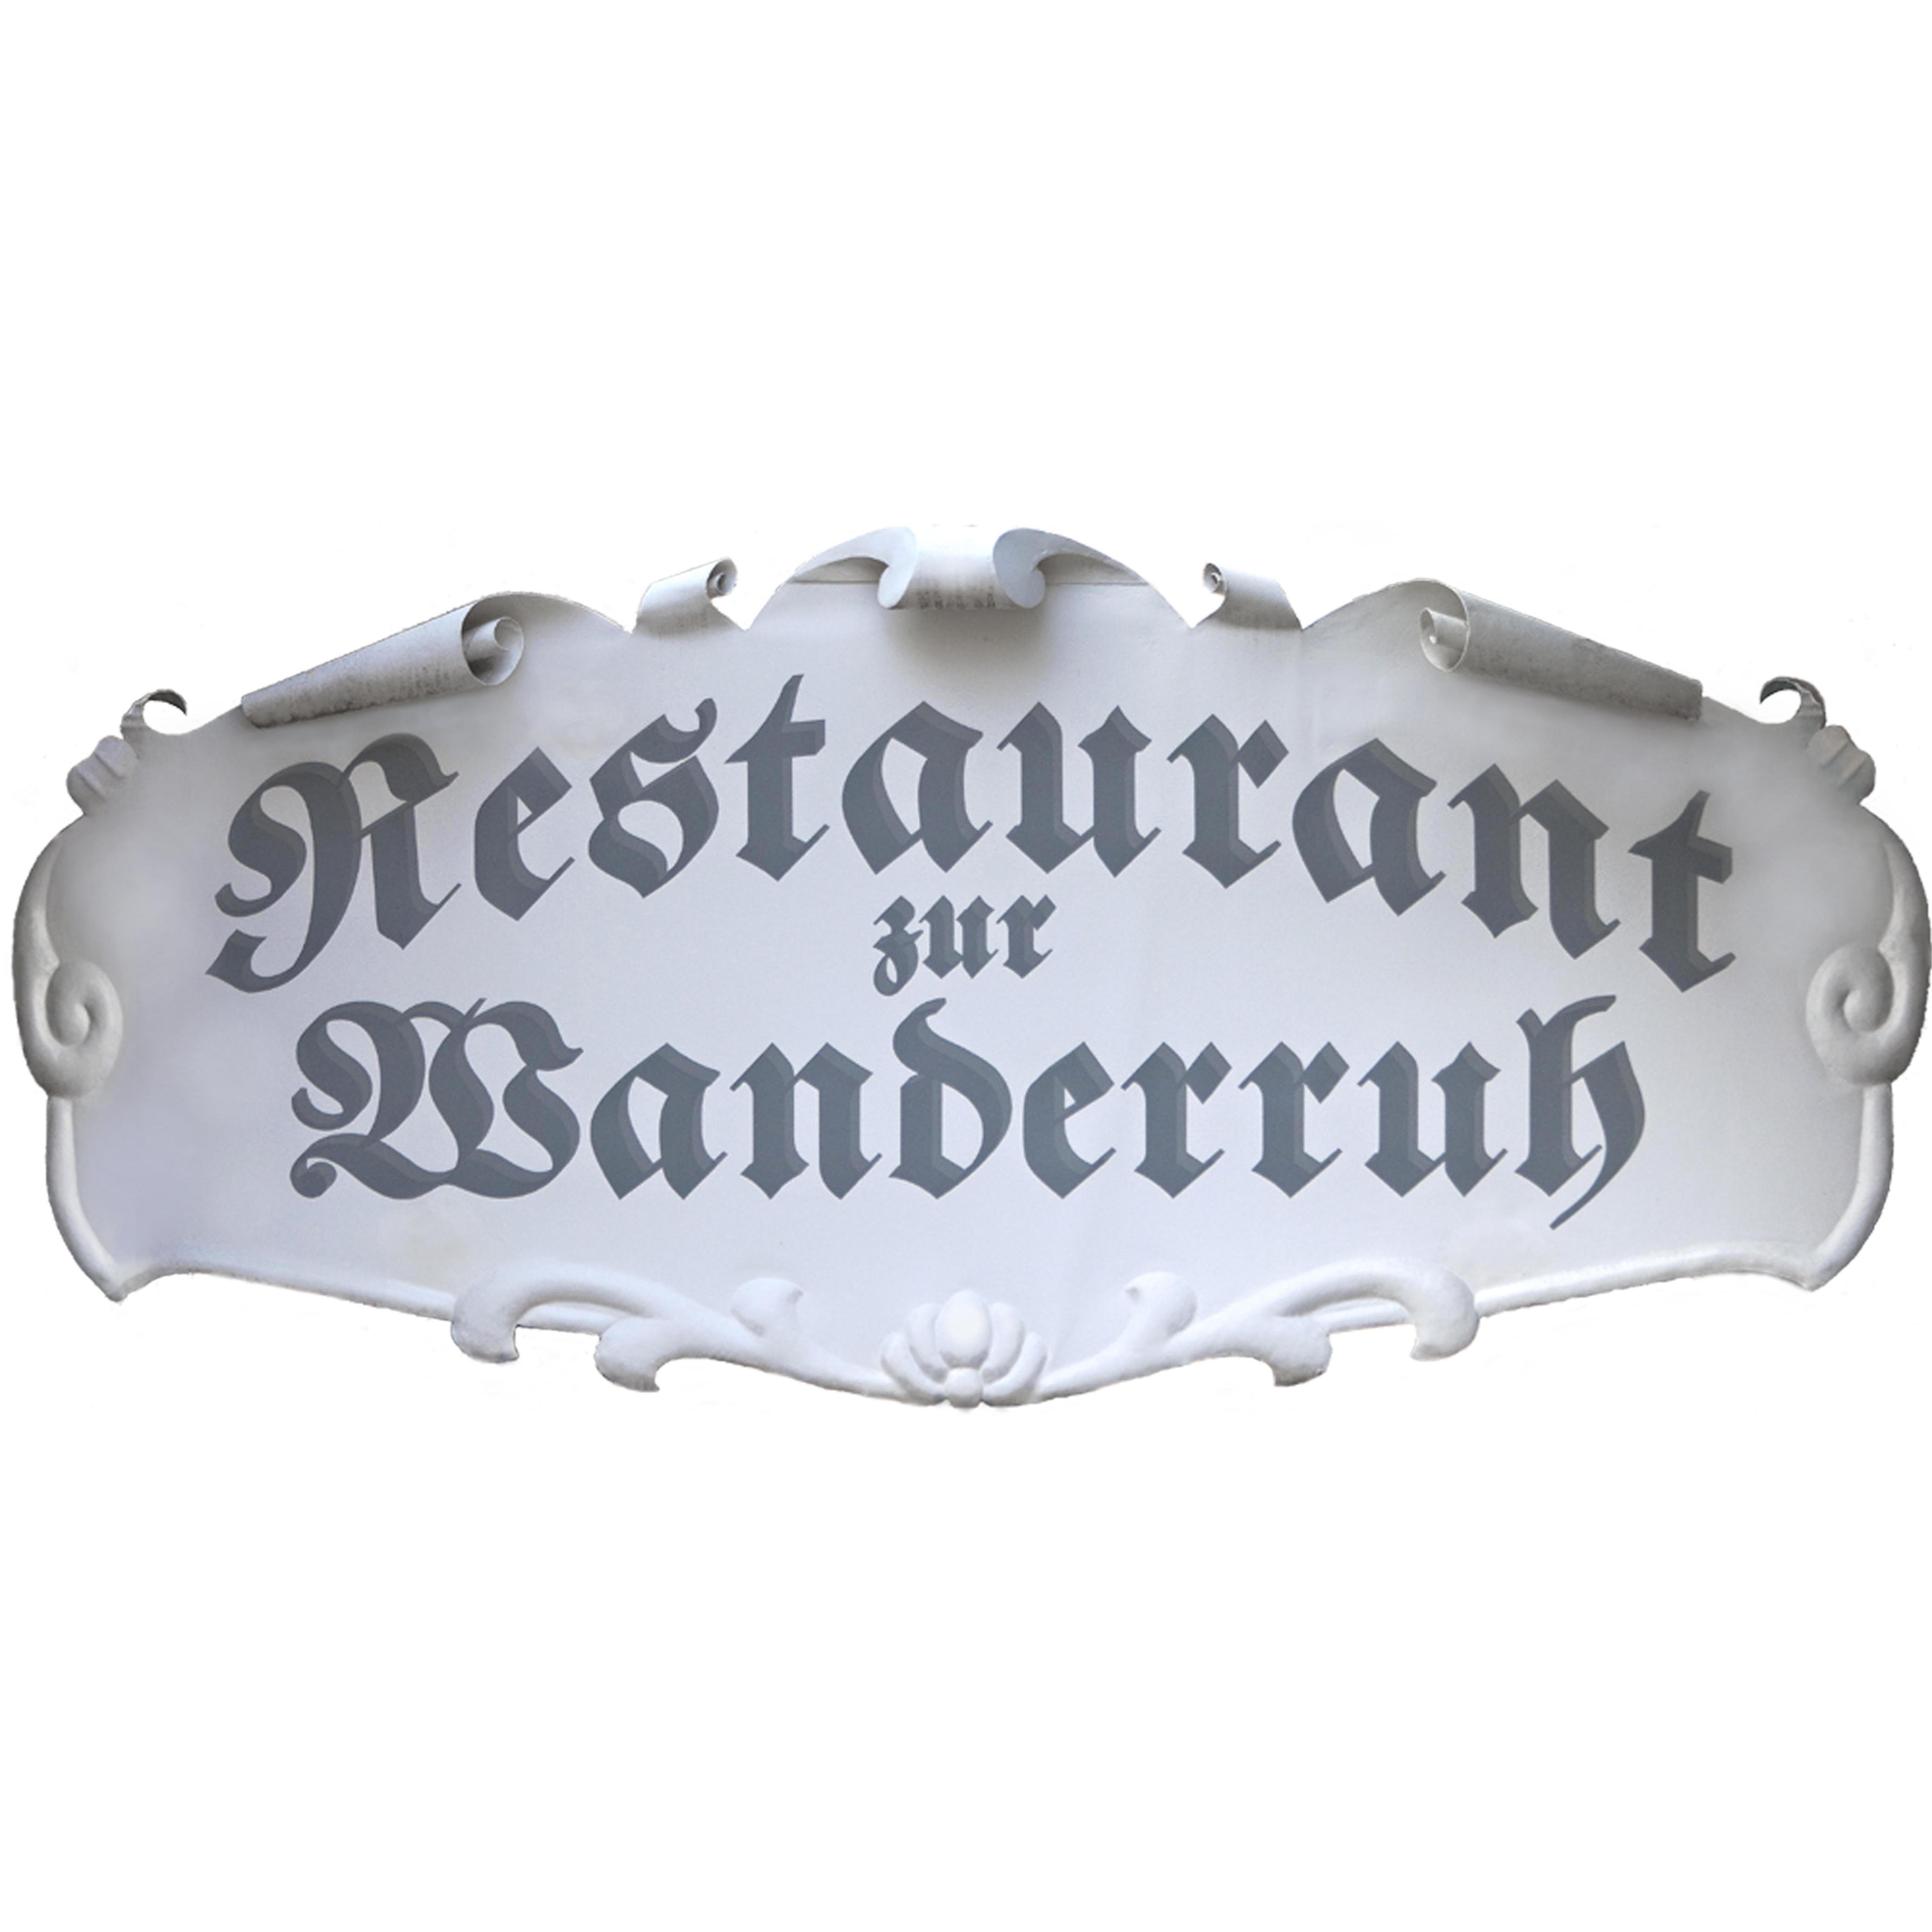 Restaurant zur Wanderruh Logo